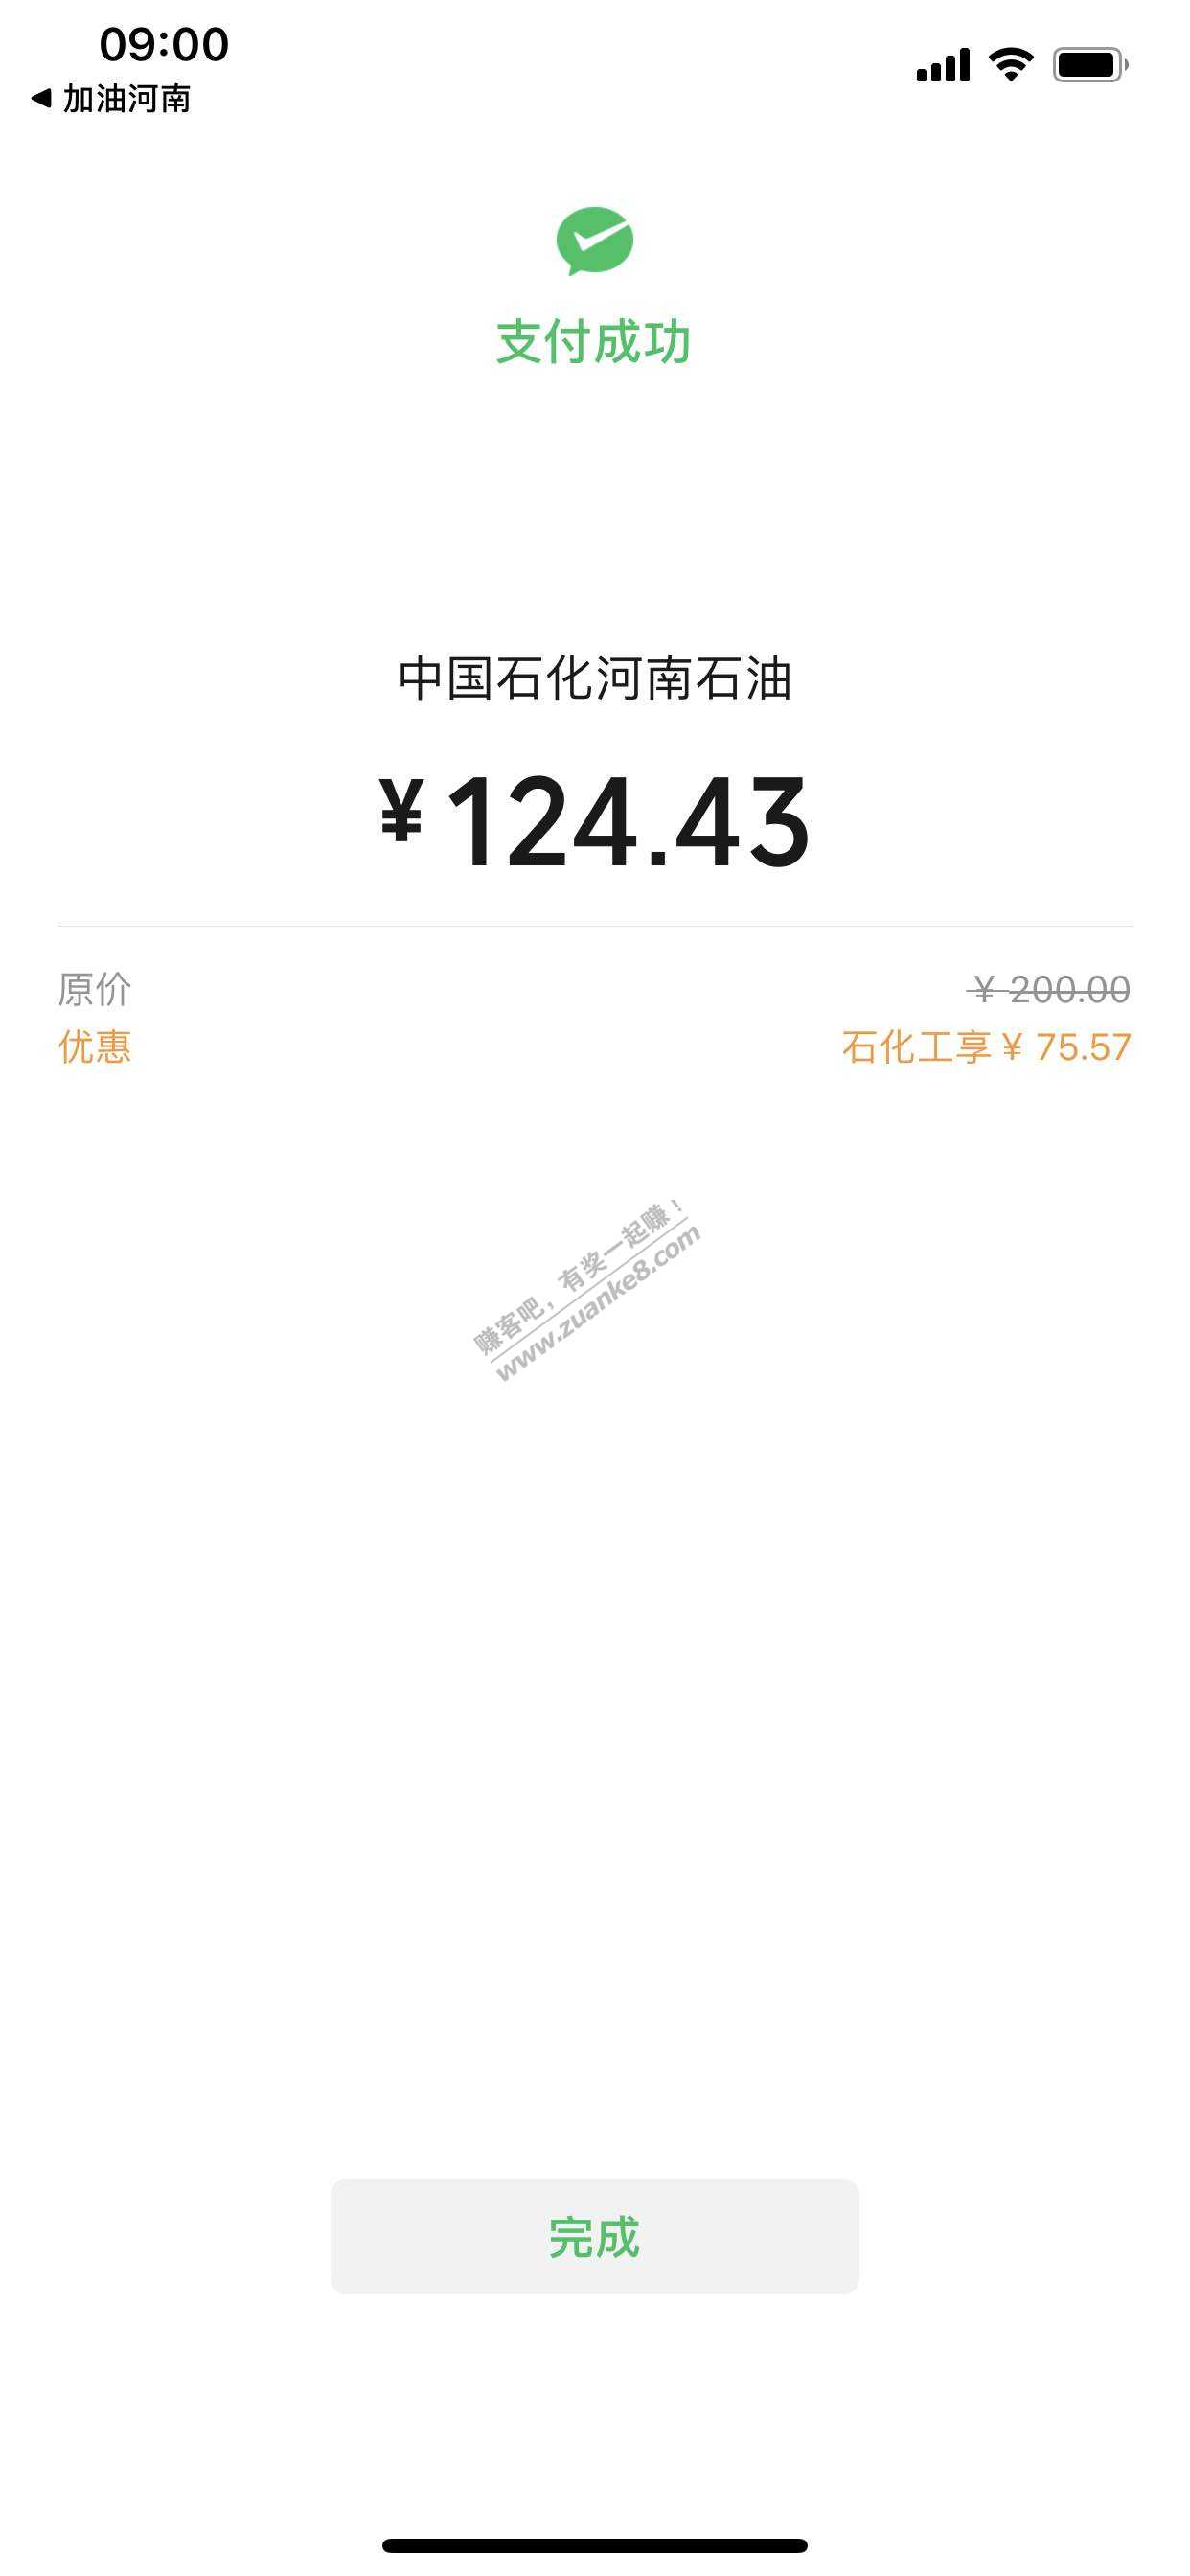 石化河南工行有水-惠小助(52huixz.com)